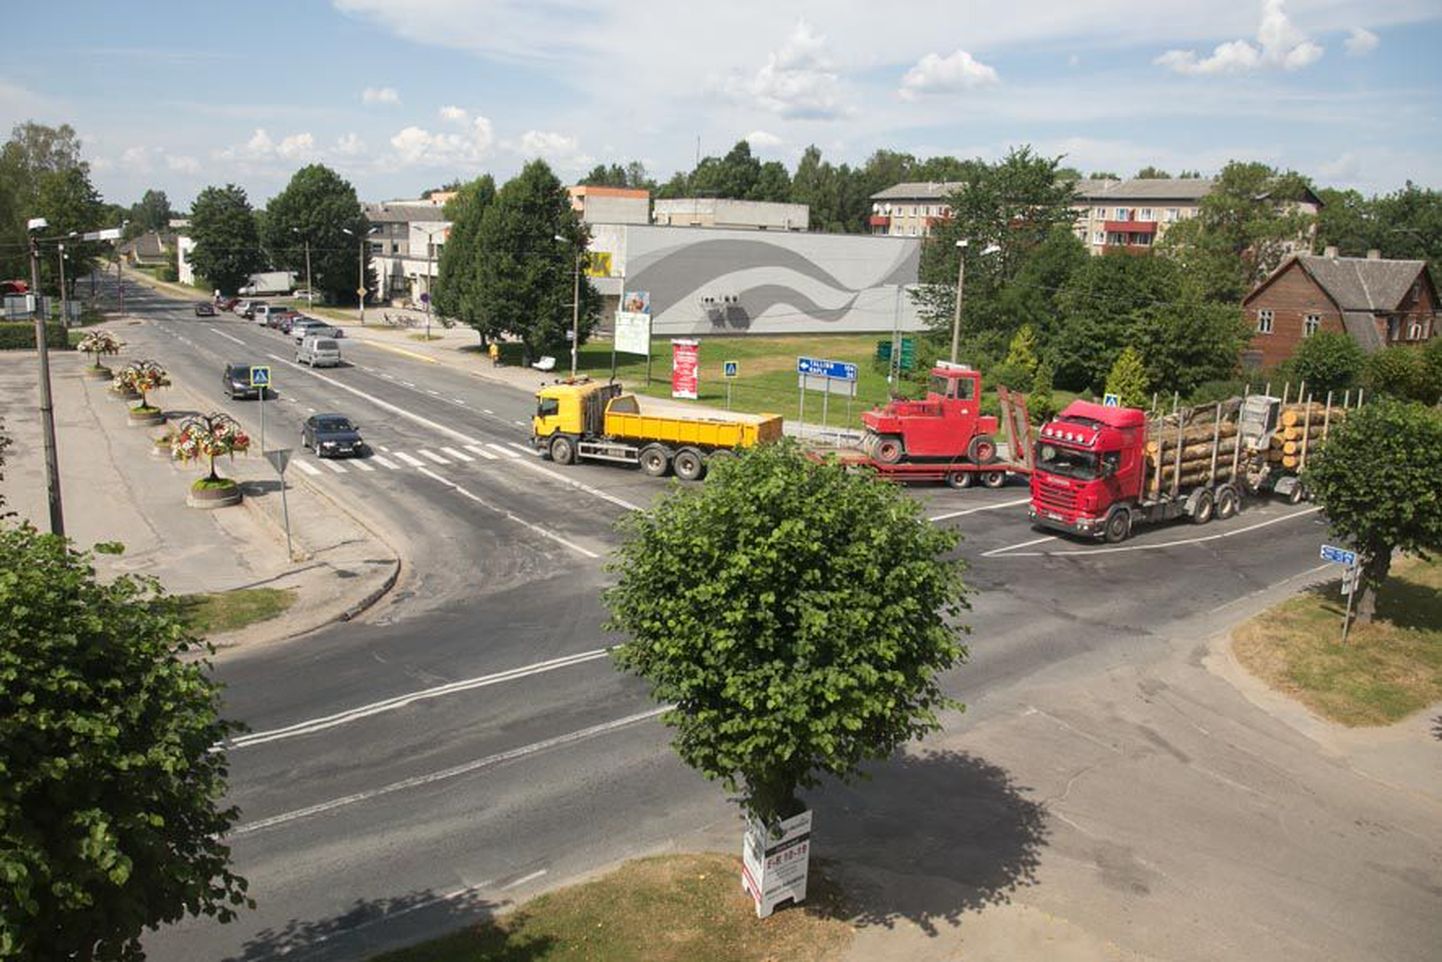 Augustis Türi linnas Paide ja Viljandi suuna peatänaval algav teeremont toob praeguse kesklinna ristmiku asemele moodsa ringristmiku. Selle ehitustööd on kavandatud järgmisesse aastasse.